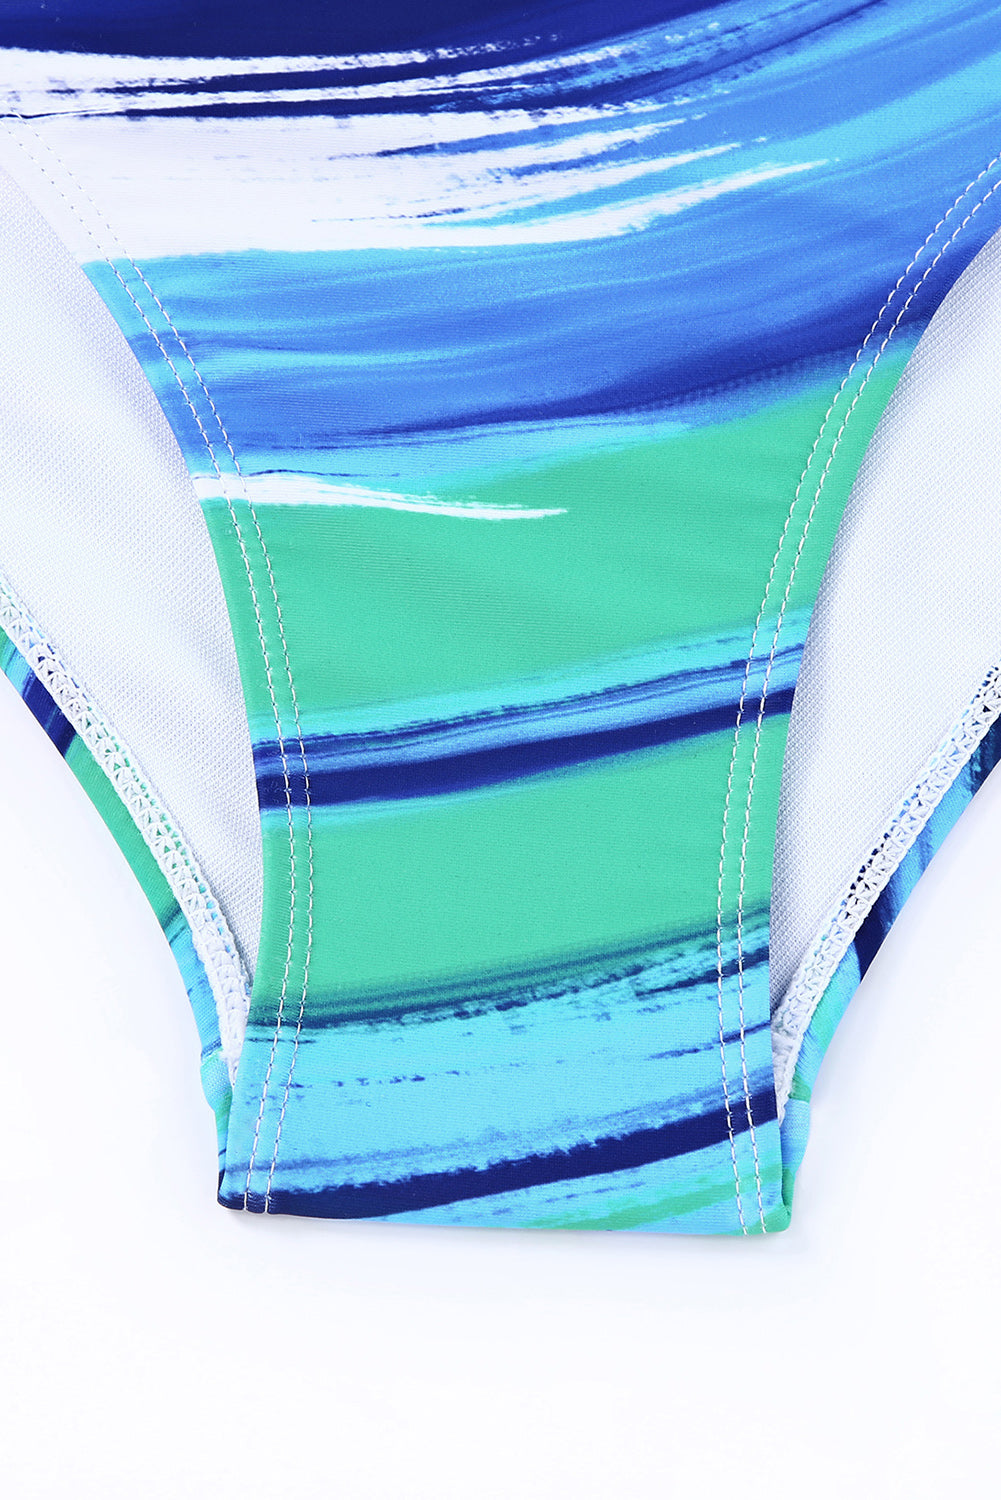 Bikini kupaći kostim s višebojnim apstraktnim printom i visokim strukom